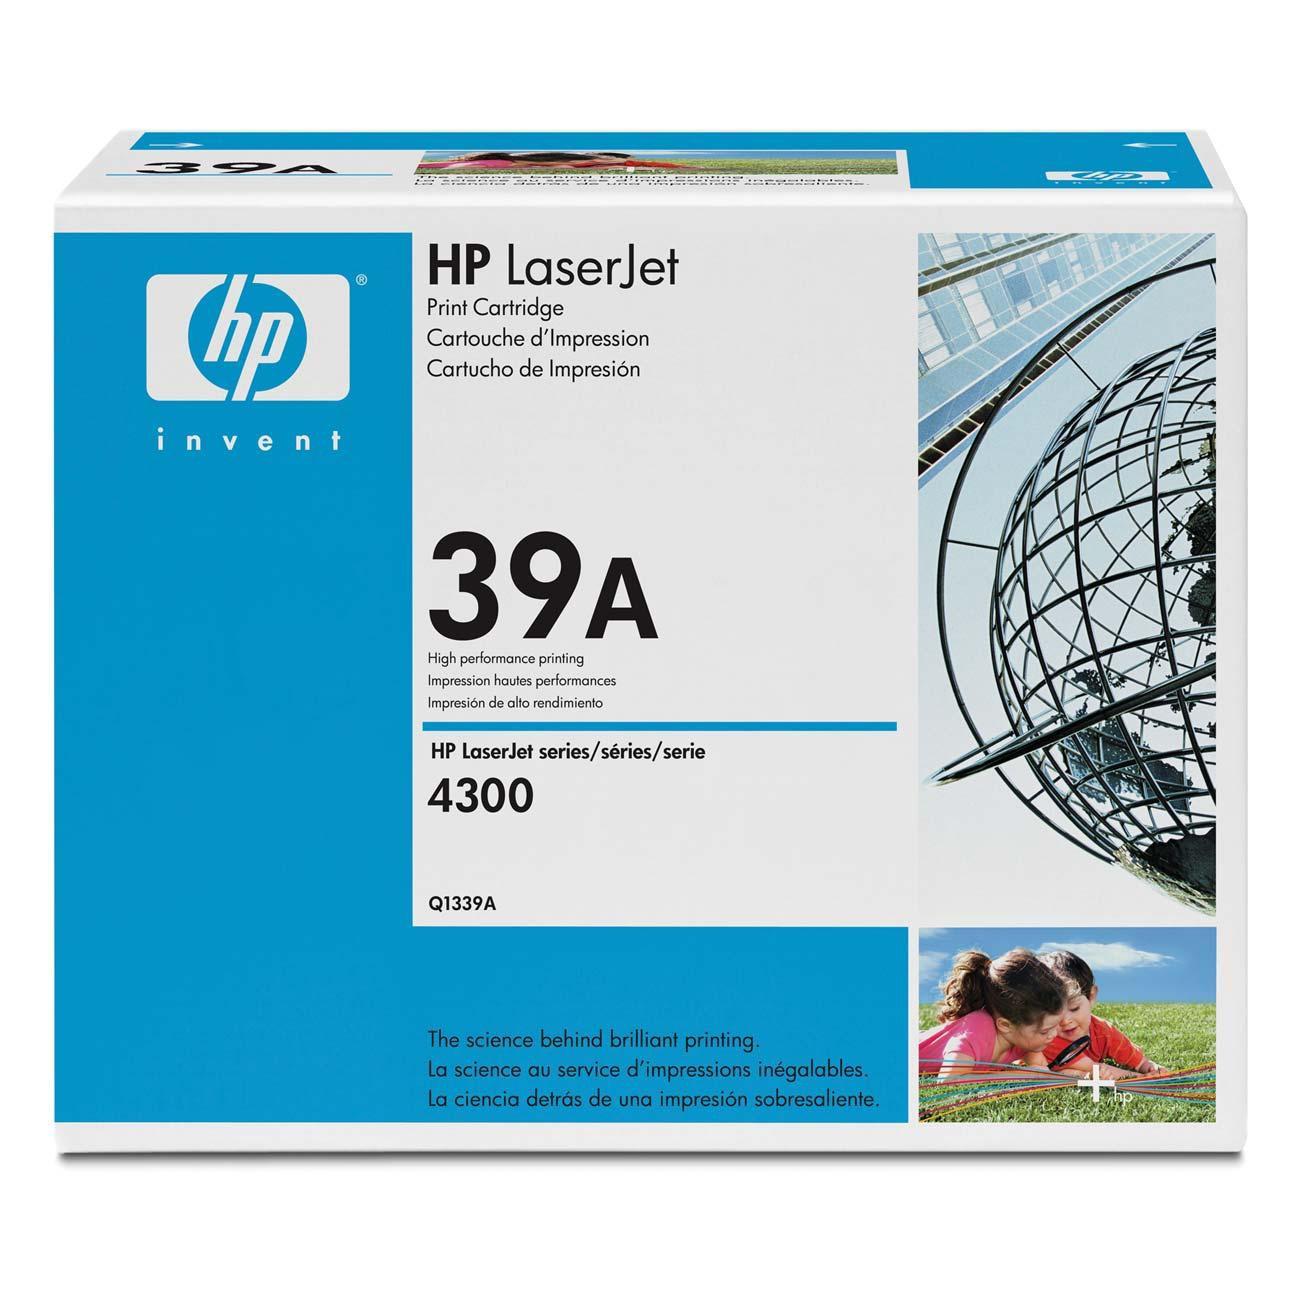 HP LaserJet Q1339A Black Print Cartridge